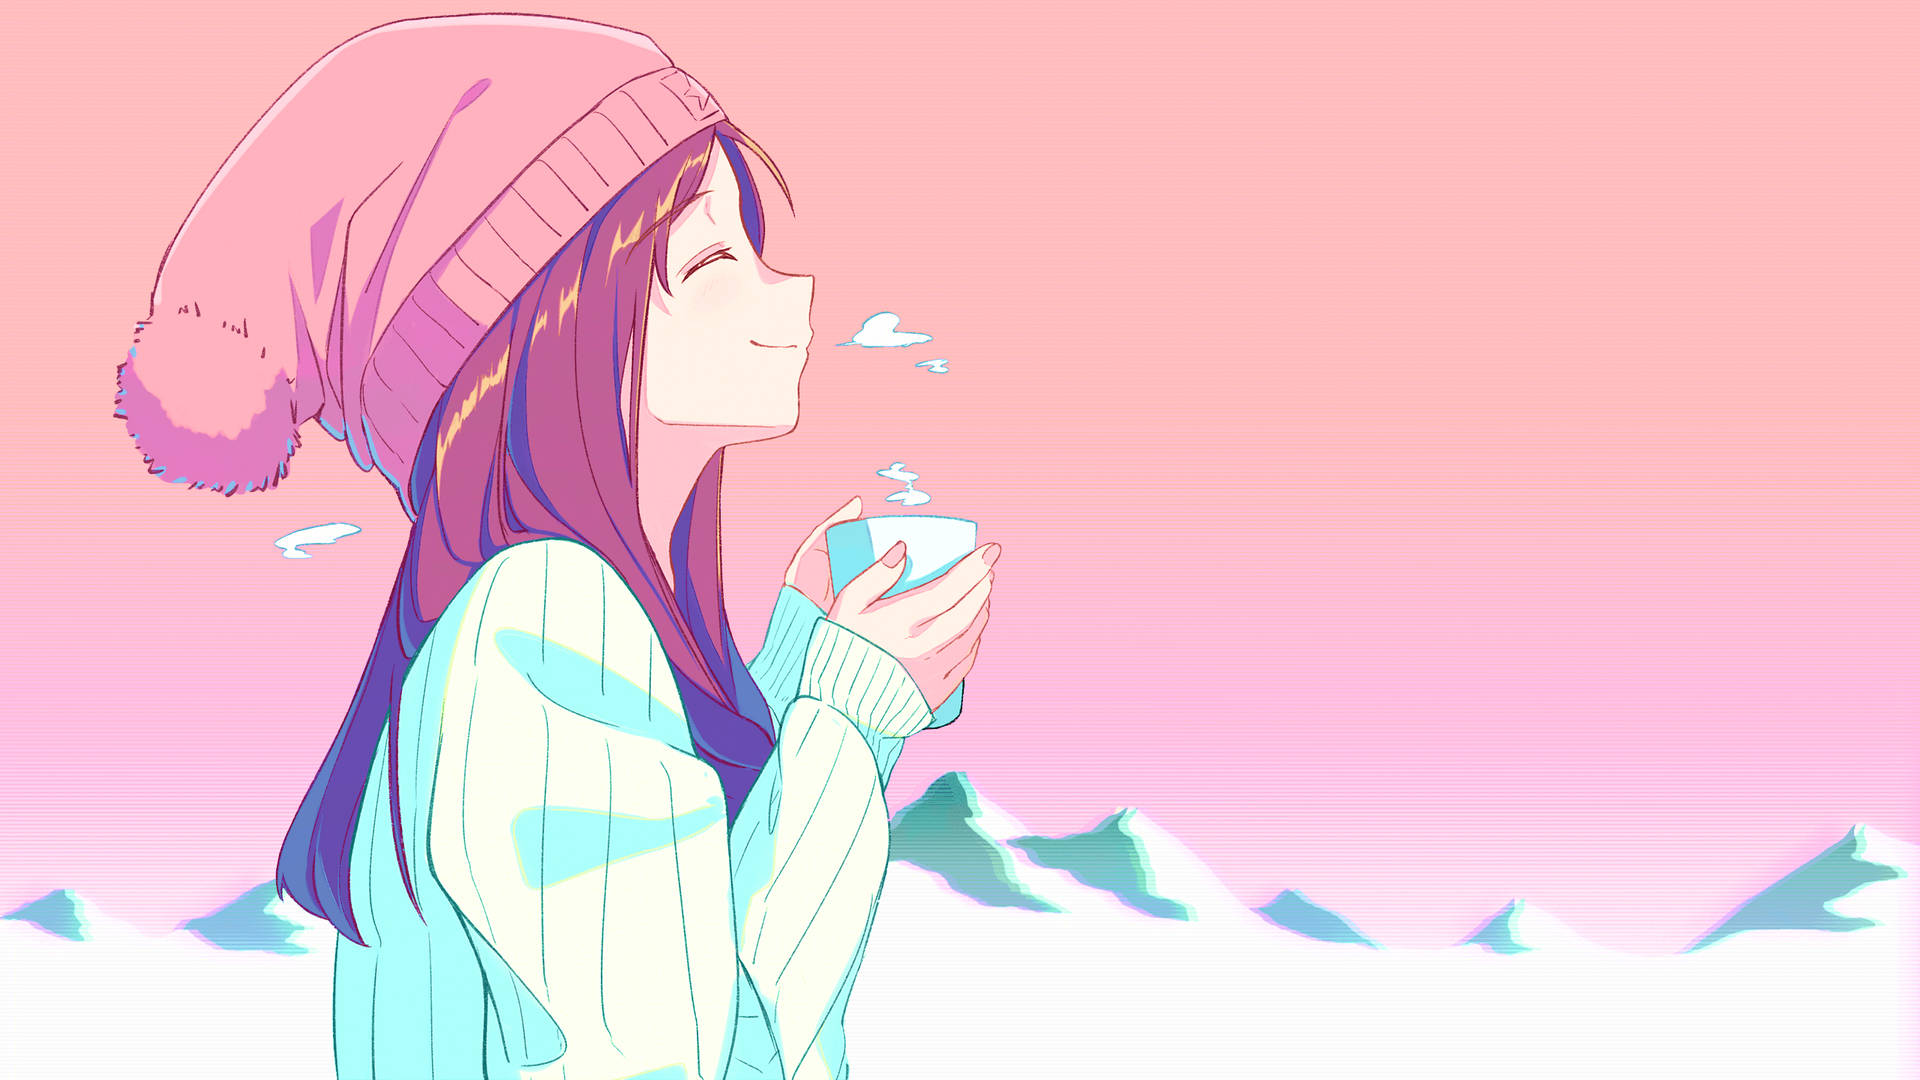 Aesthetic Anime Girl In Winter